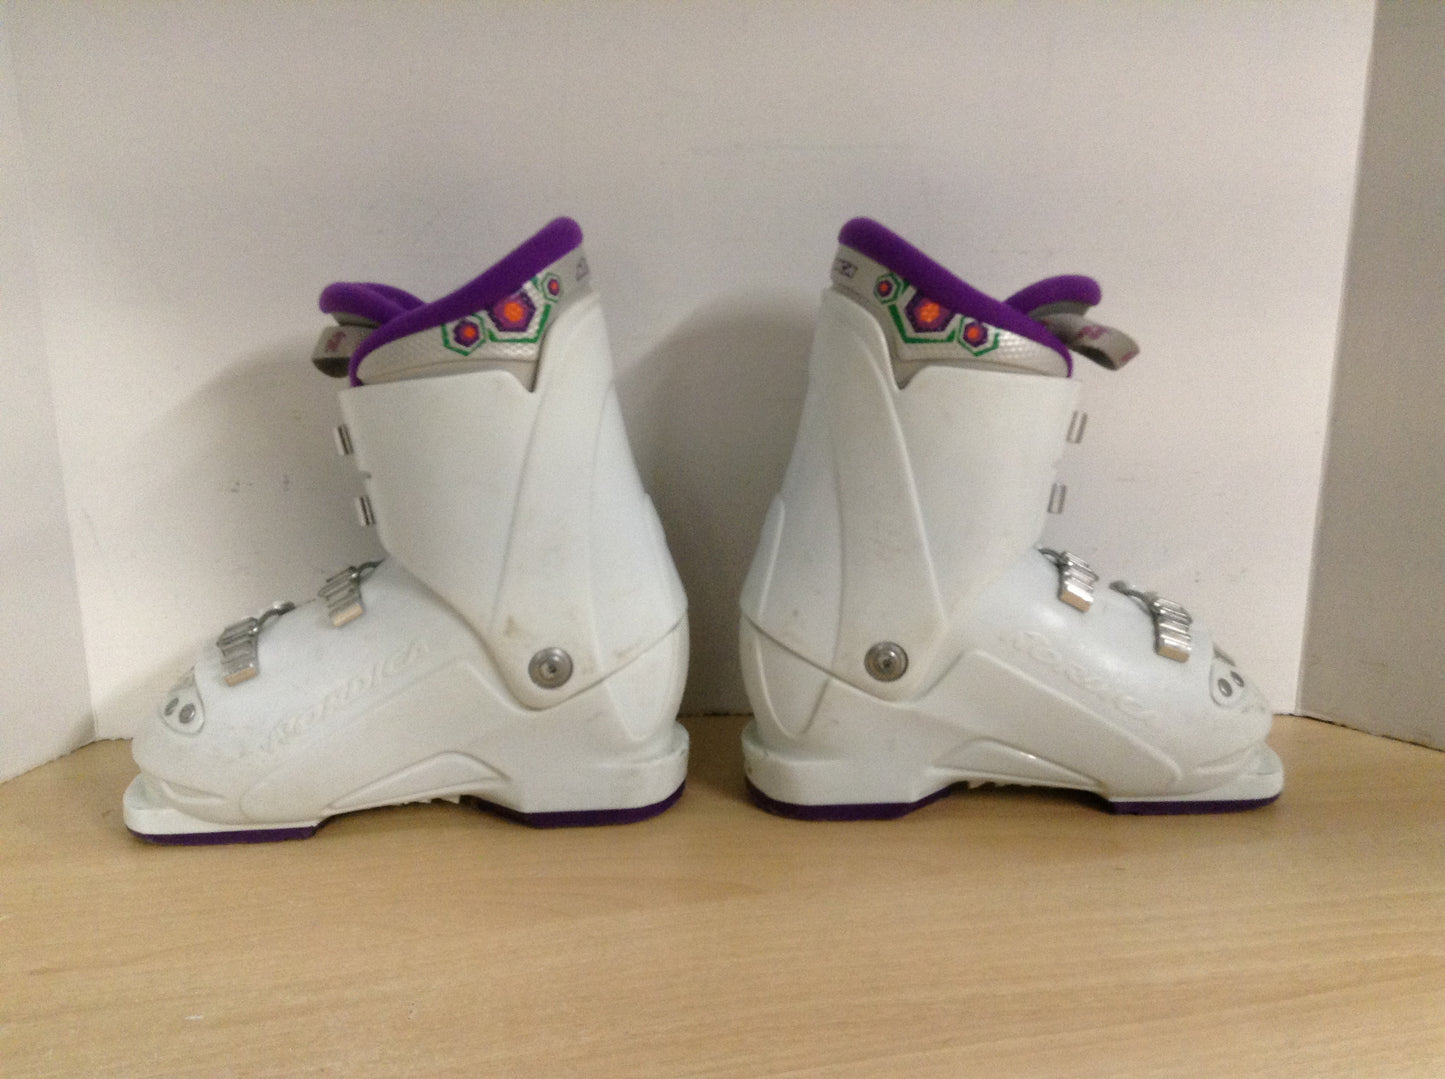 Ski Boots Mondo Size 19.5 Child Shoe Size 13-1 240 mm Nordica White Purple